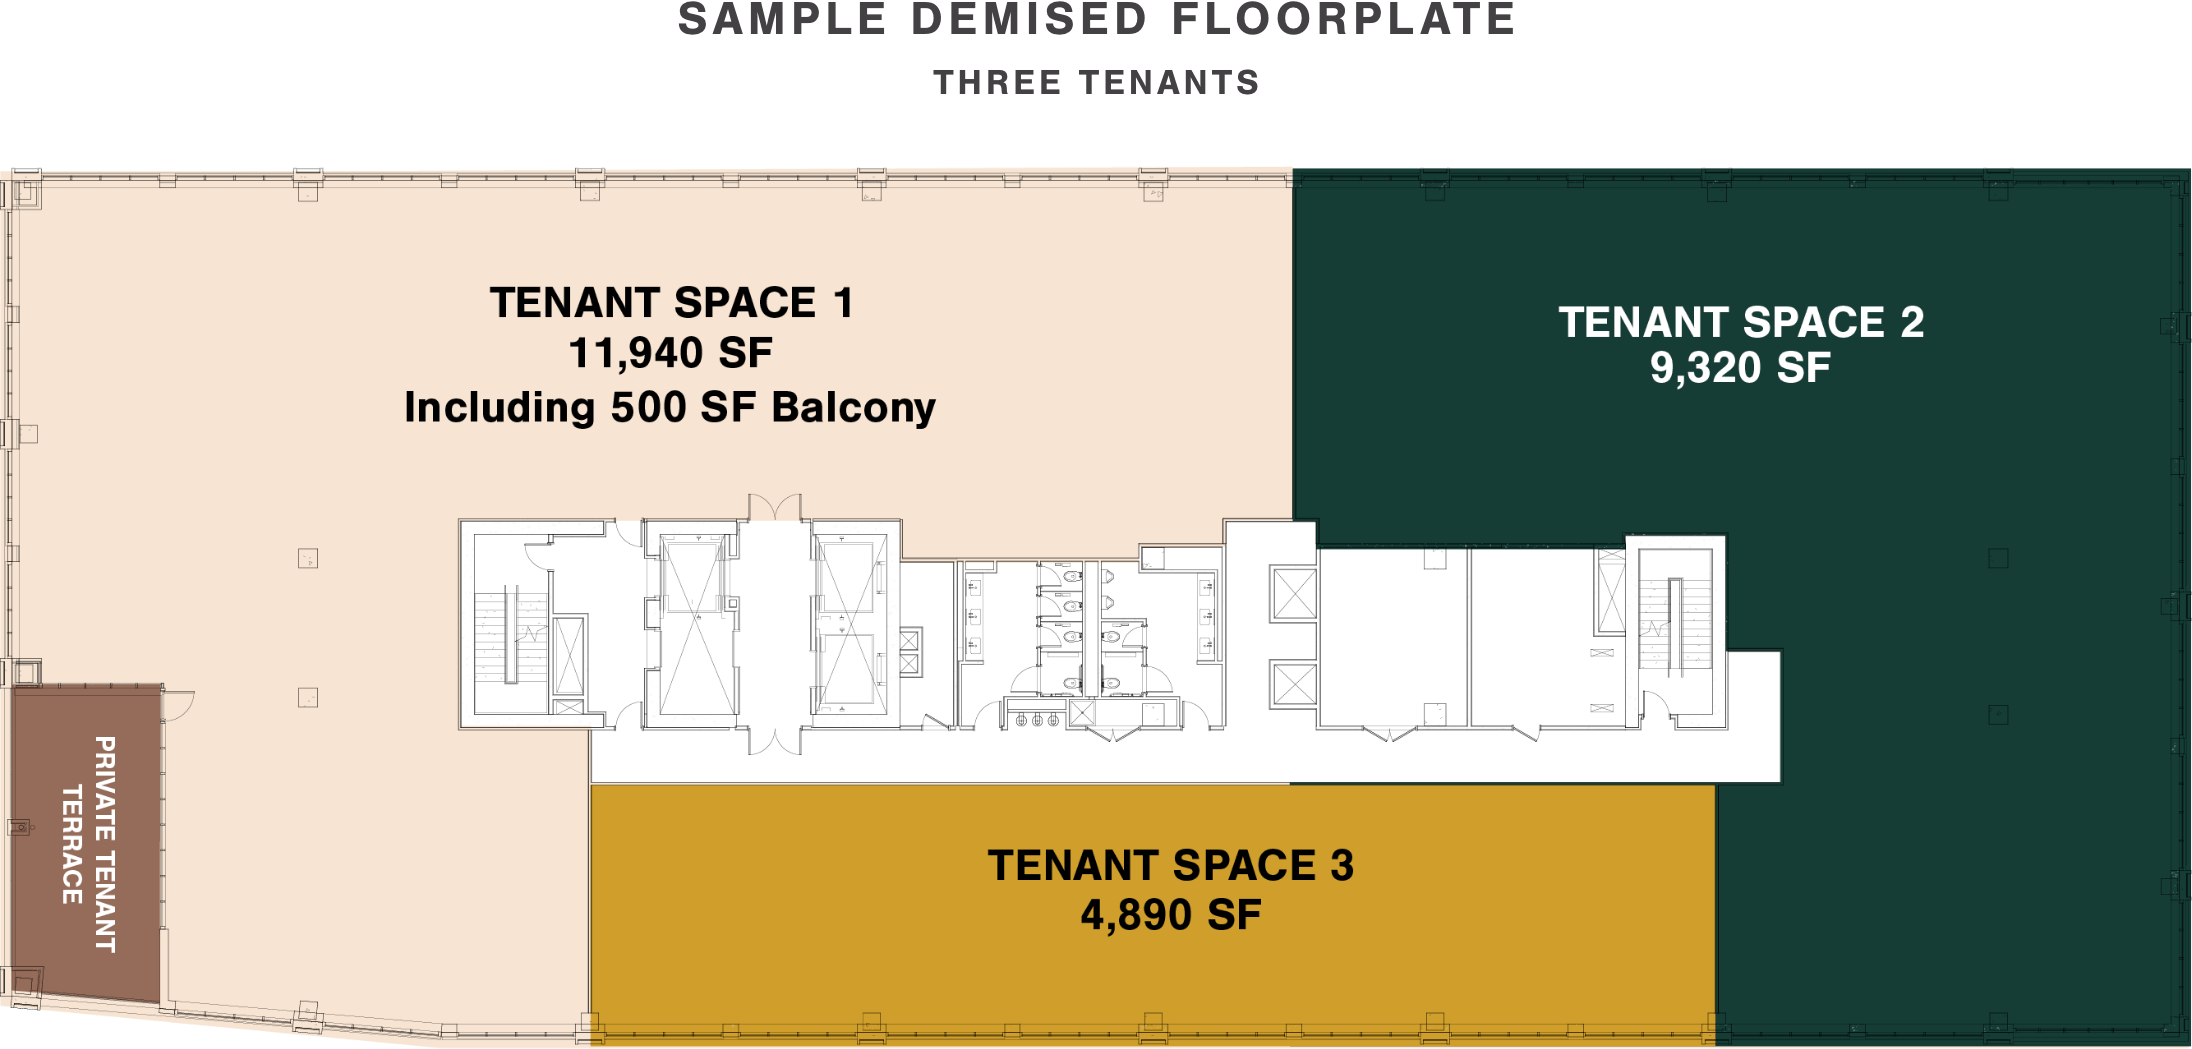 Three Tenant Floorplate